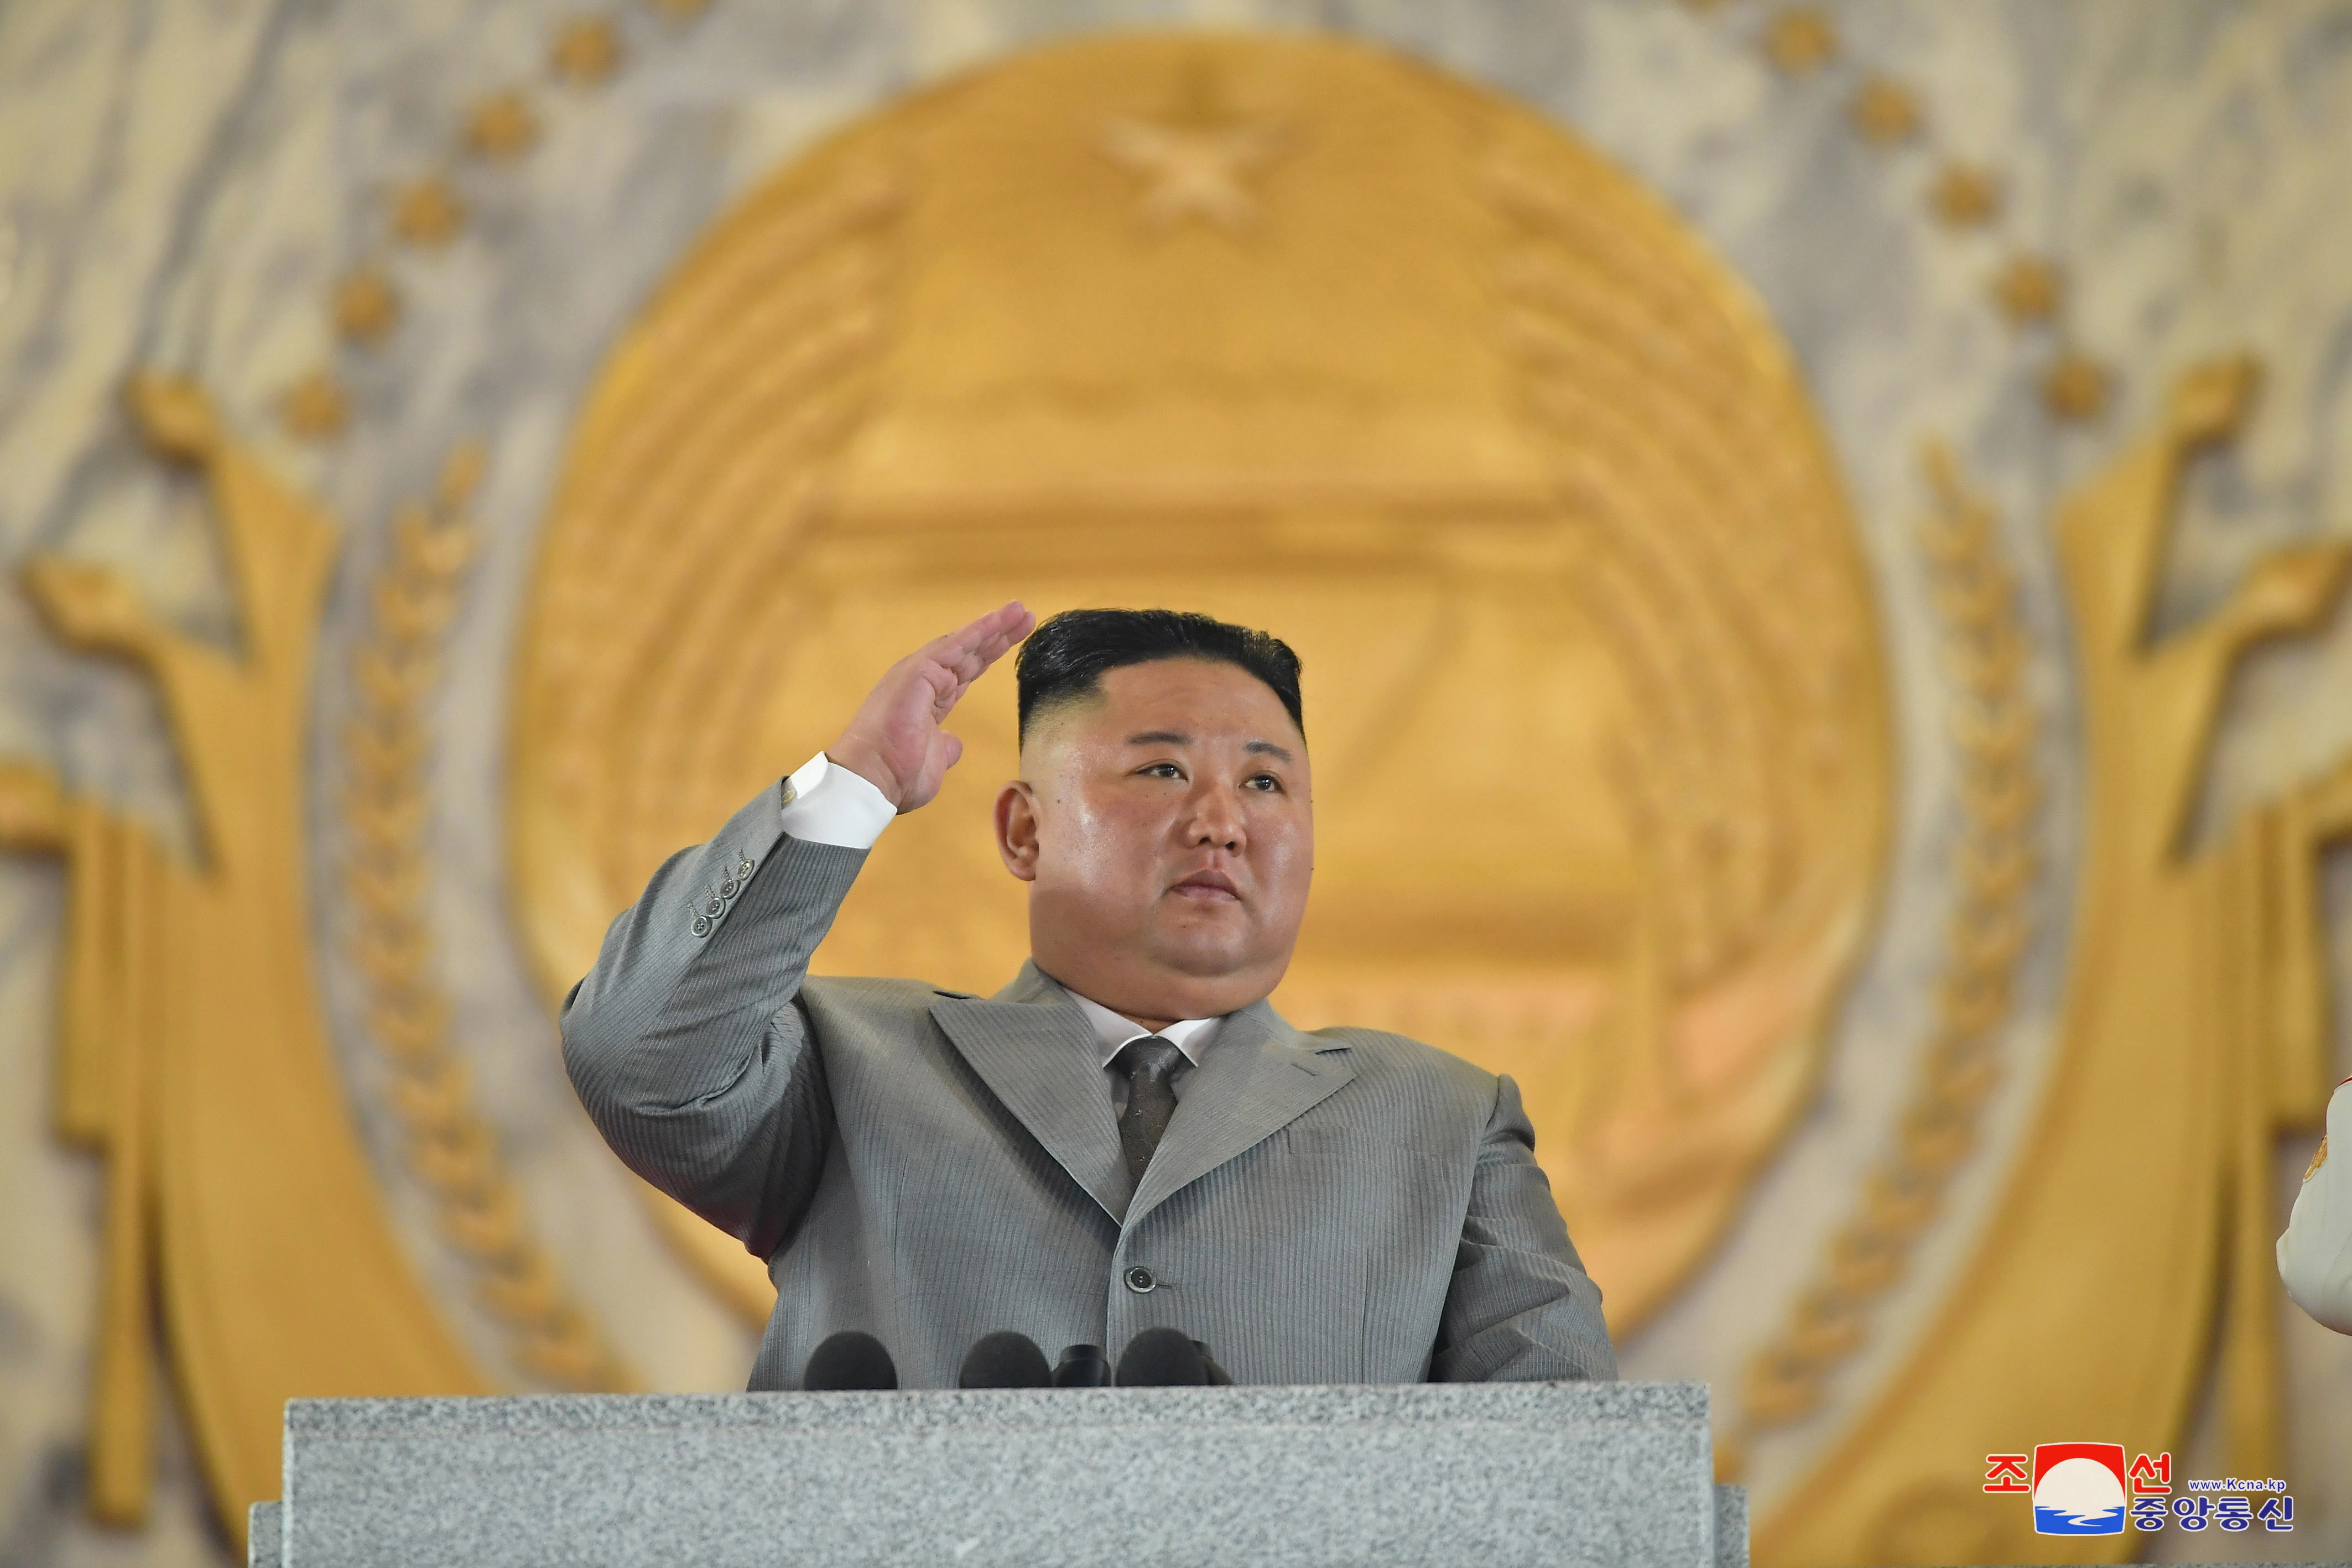 Acorralado por la escasez y el colapso comercial, Kim Jong-un abrirá las fronteras norcoreanas con China